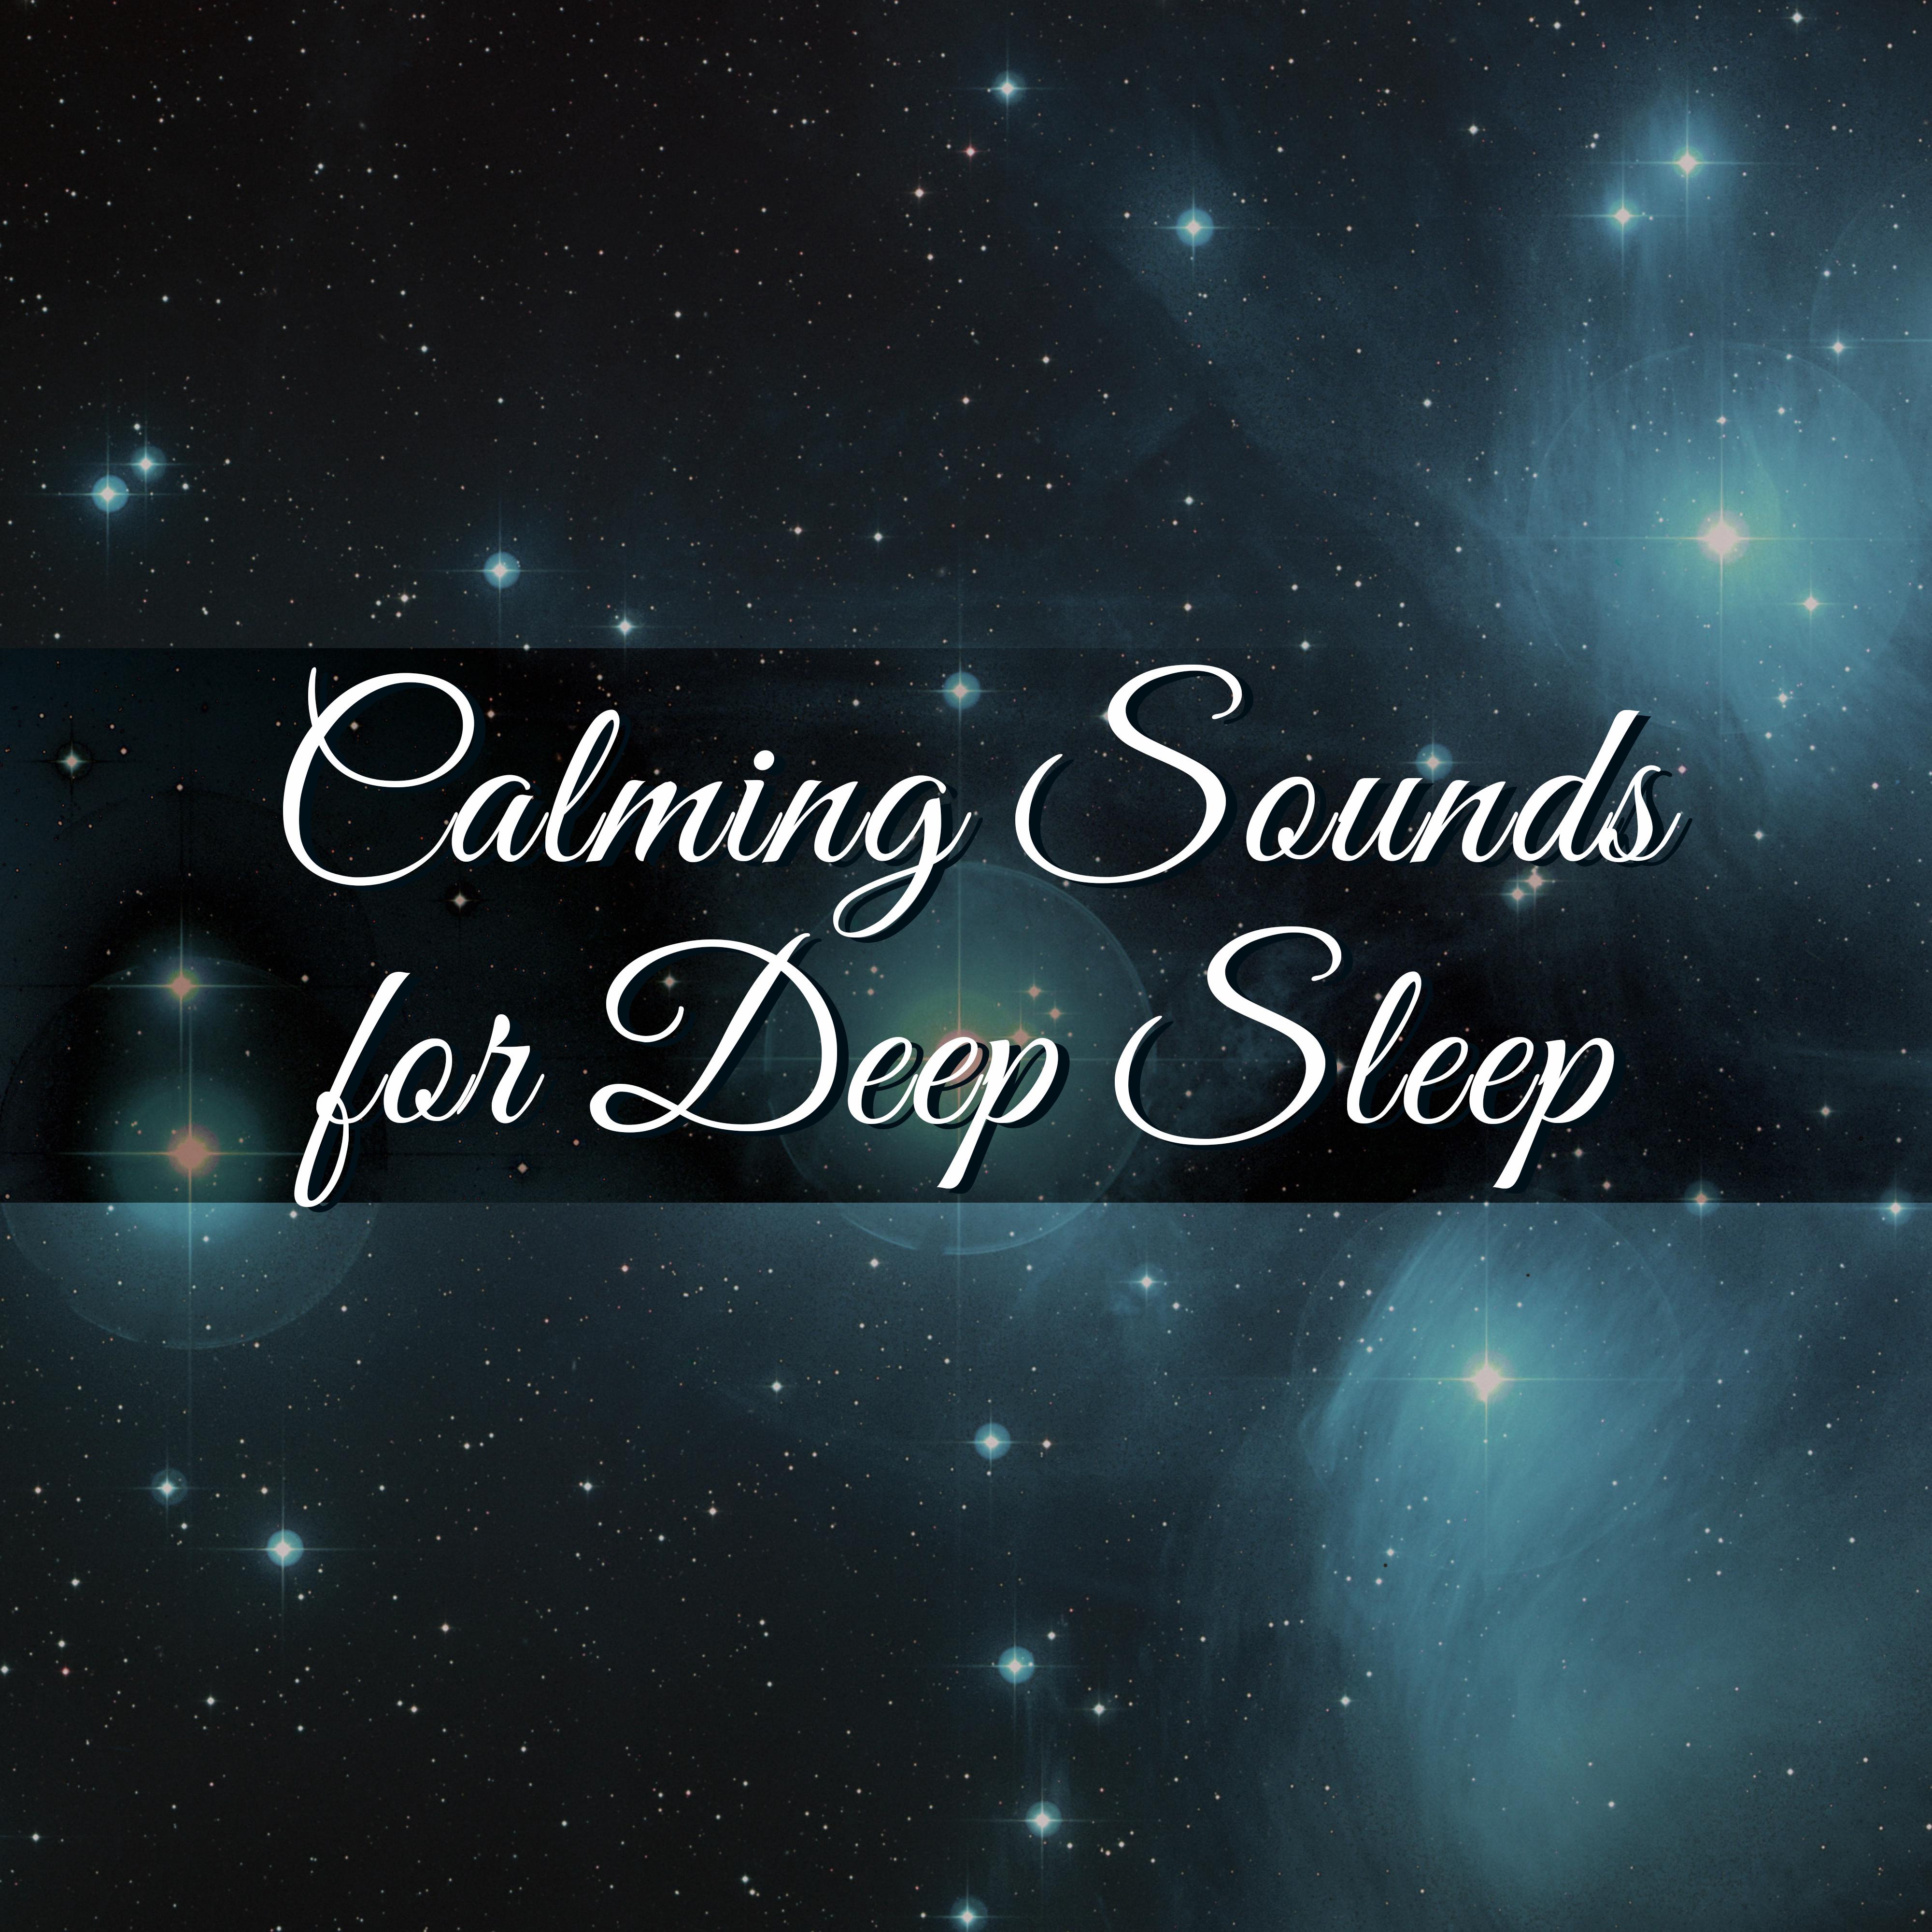 Calming Sounds for Deep Sleep – Waves of Calmness, Spirit Relaxation, Deep Sleep, Sweet Dreams, Night Rest